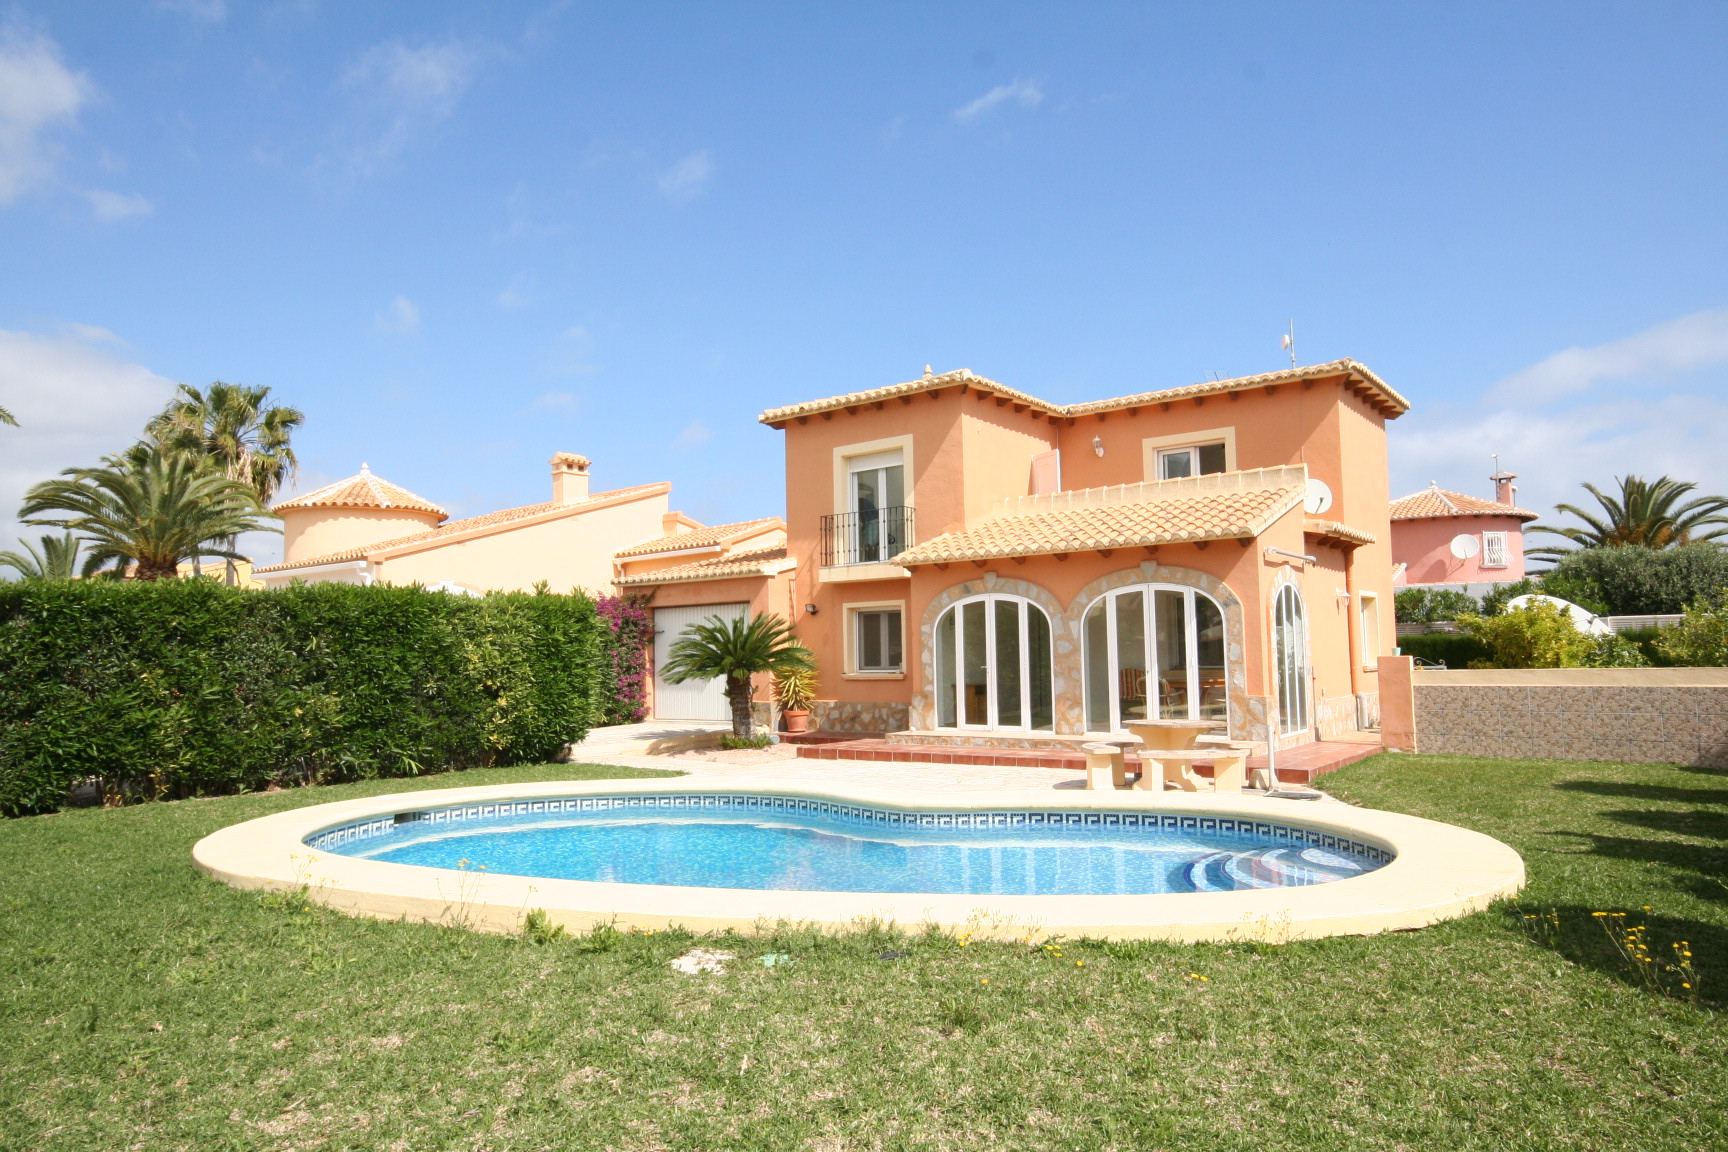 Spanien Immobilie Mieten und Immobilie in Spanien Kaufen Haus kaufen 